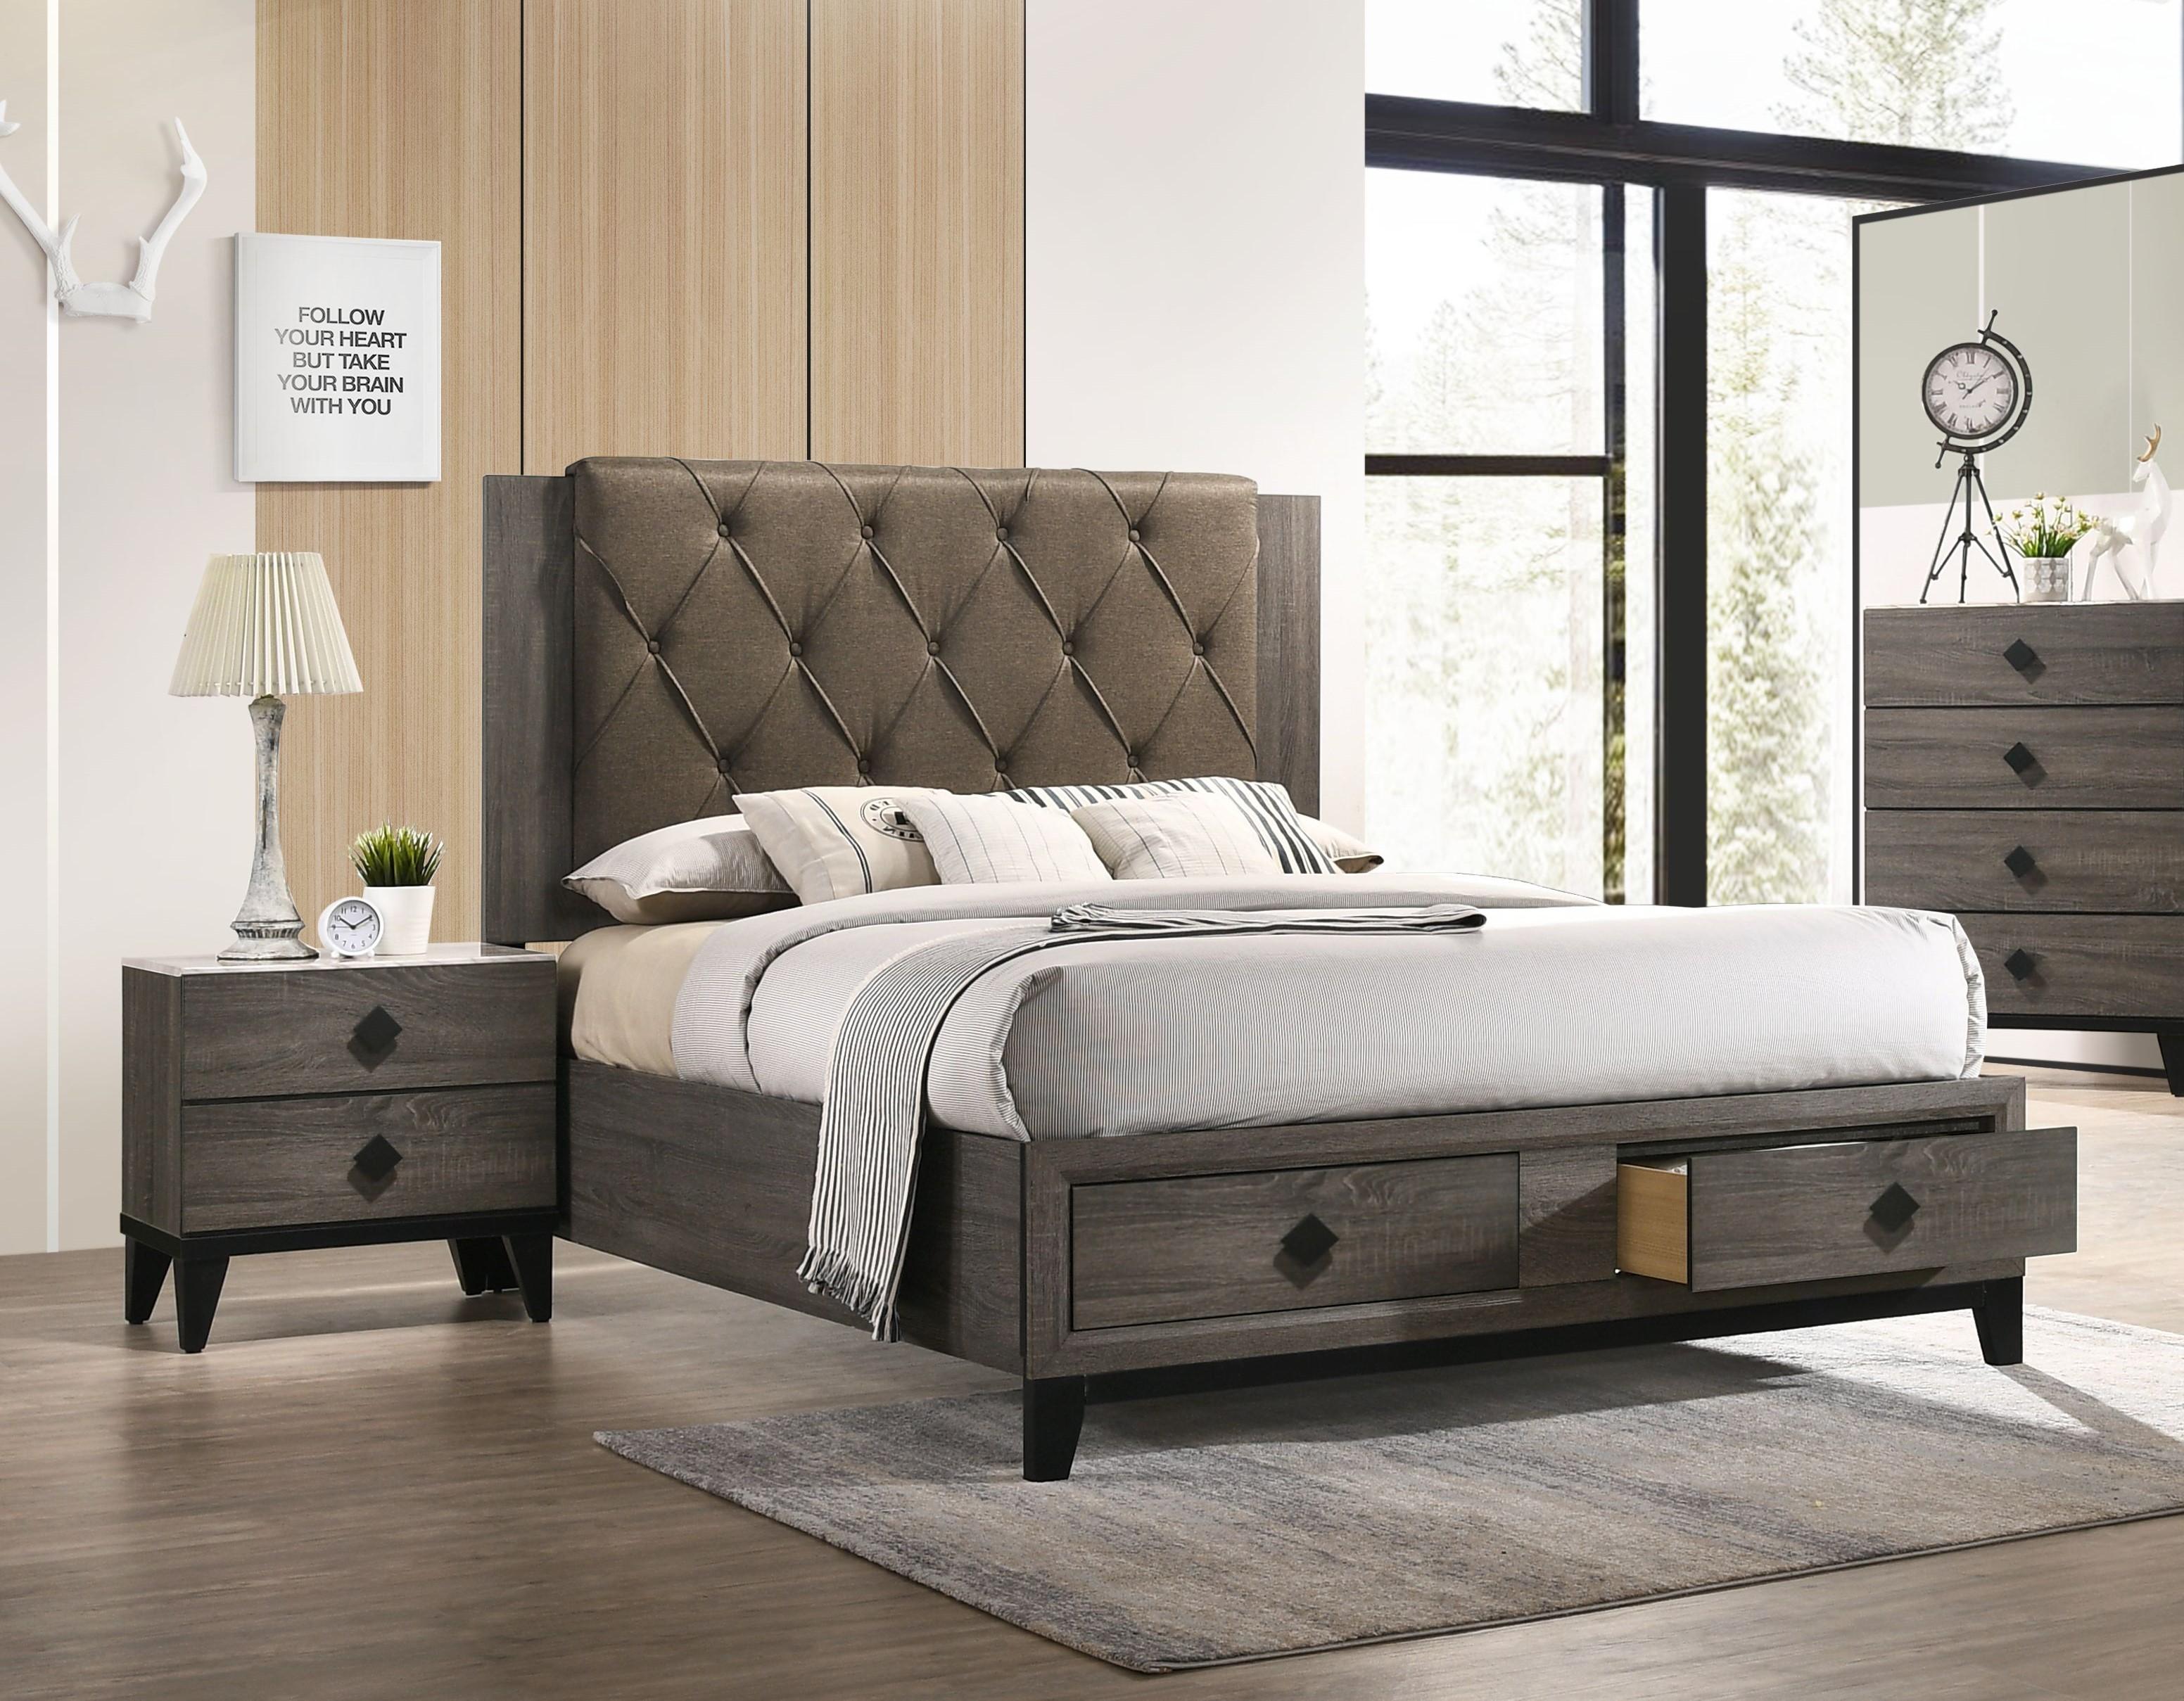 

    
Transitional Fabric & Rustic Gray Oak Queen Bedroom Set 3PCS by Acme Avantika-27670Q-S
